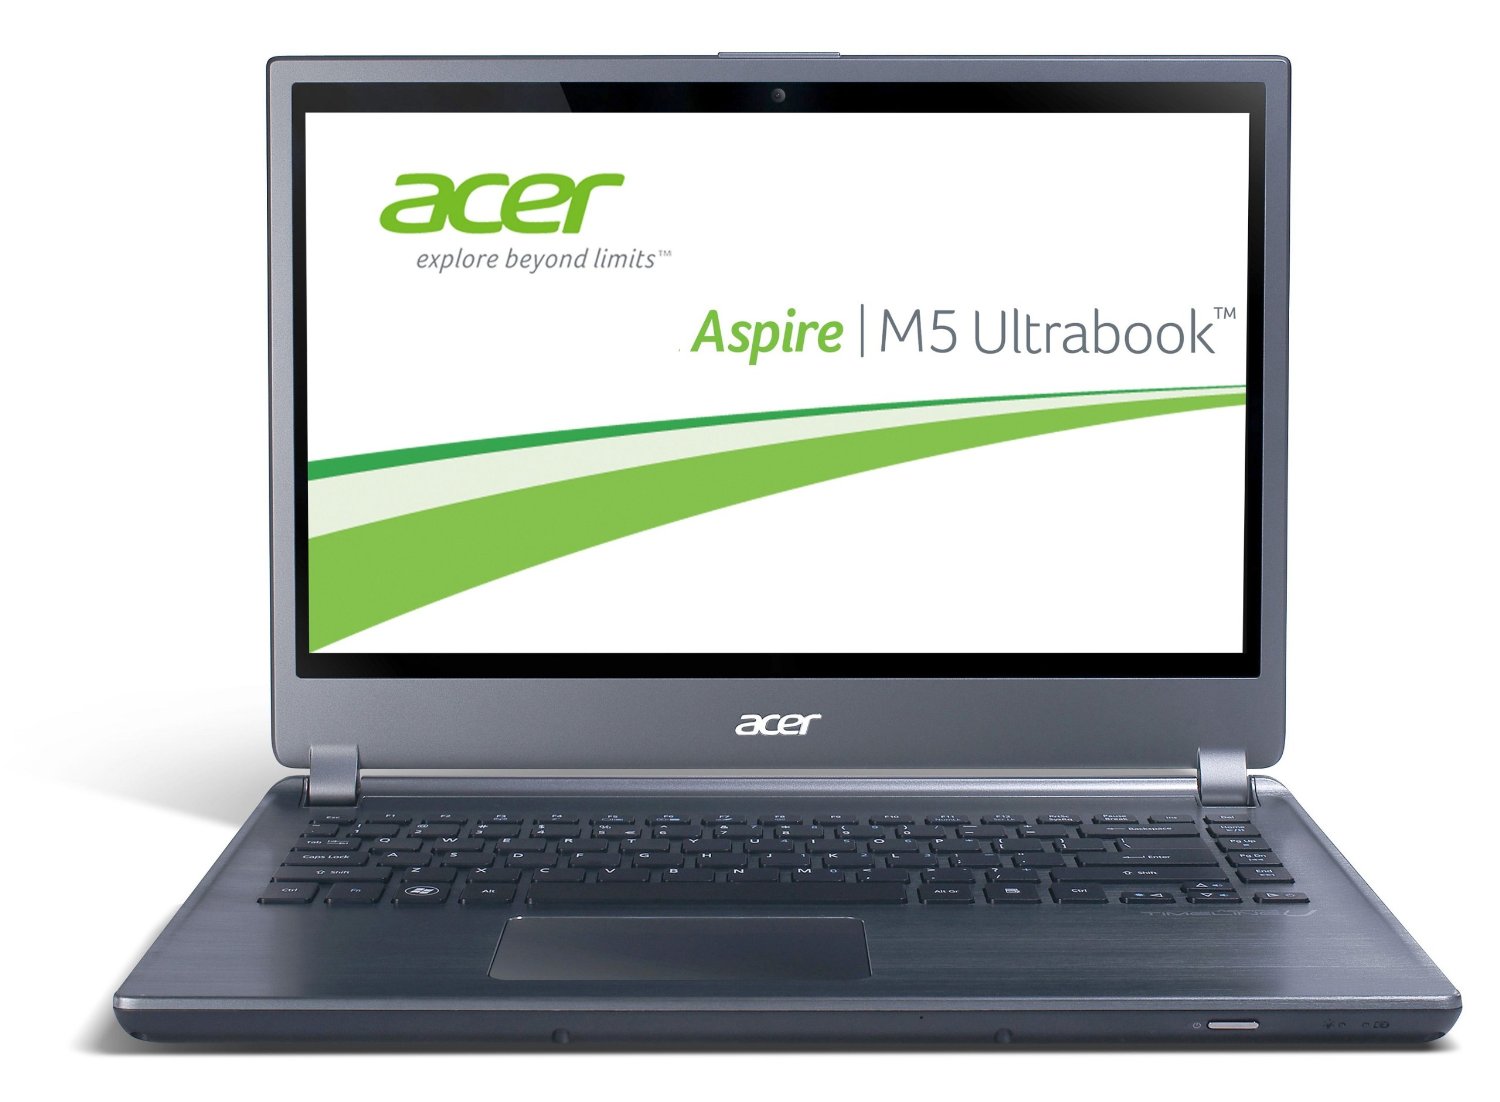 Laptop Acer Aspire M5-481T, Intel Core i5-3317U 1.70GHz, 4GB DDR3, 120GB SSD, Webcam, 14 Inch